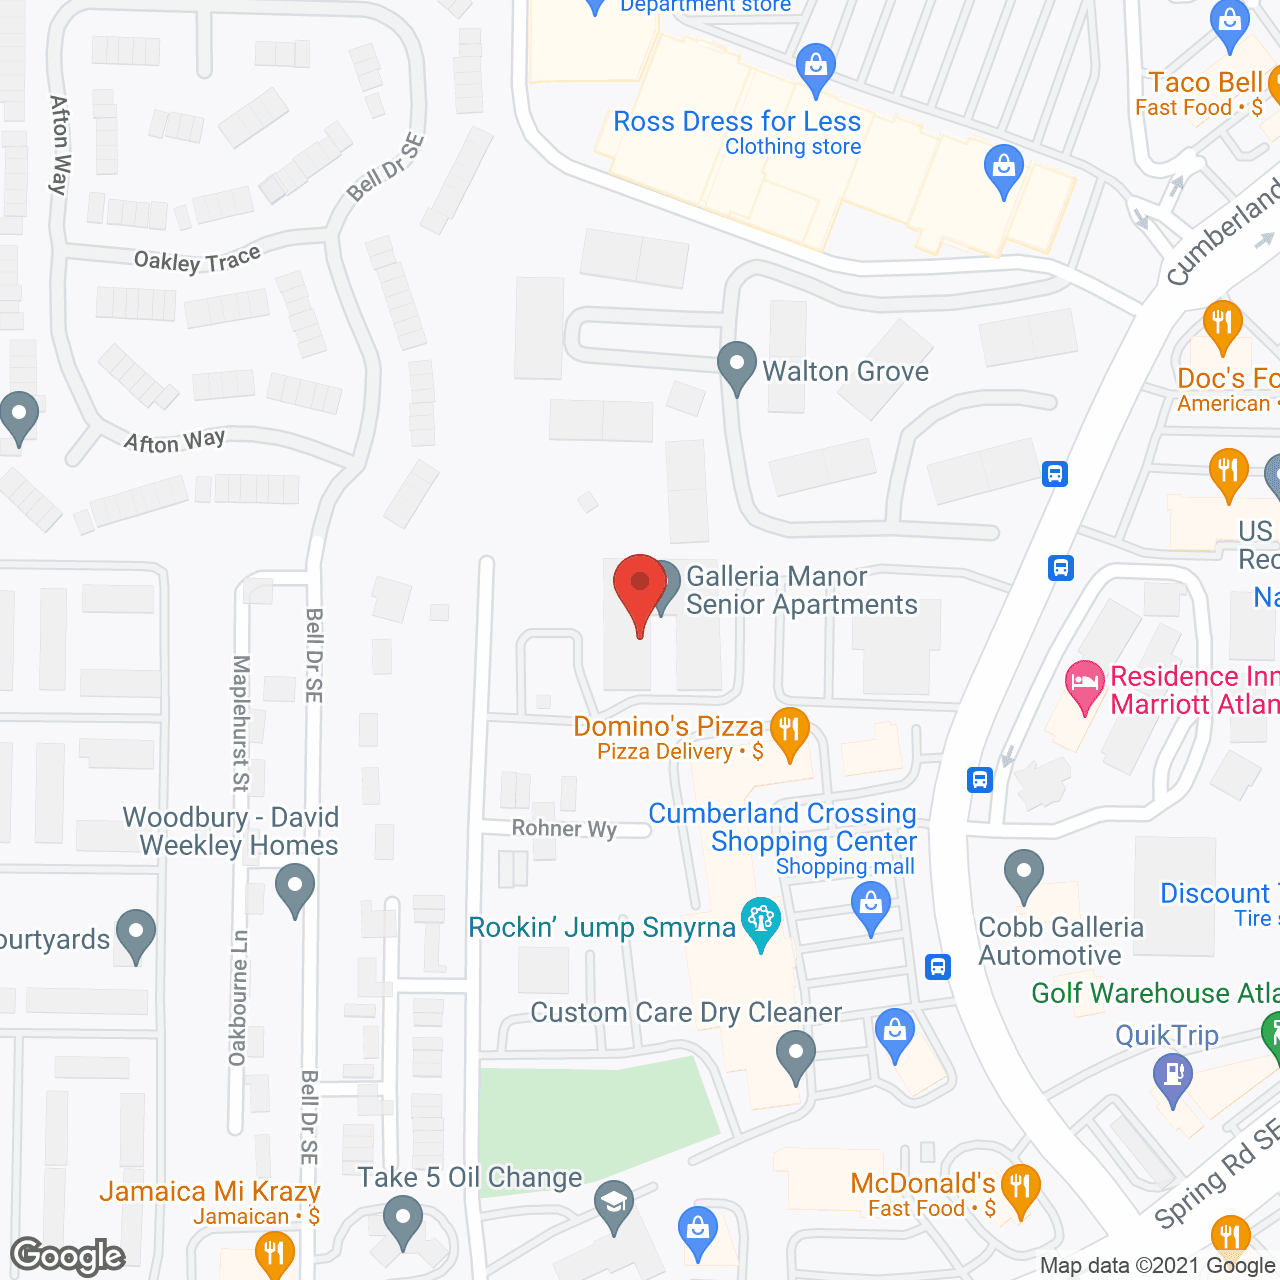 Galleria Manor in google map